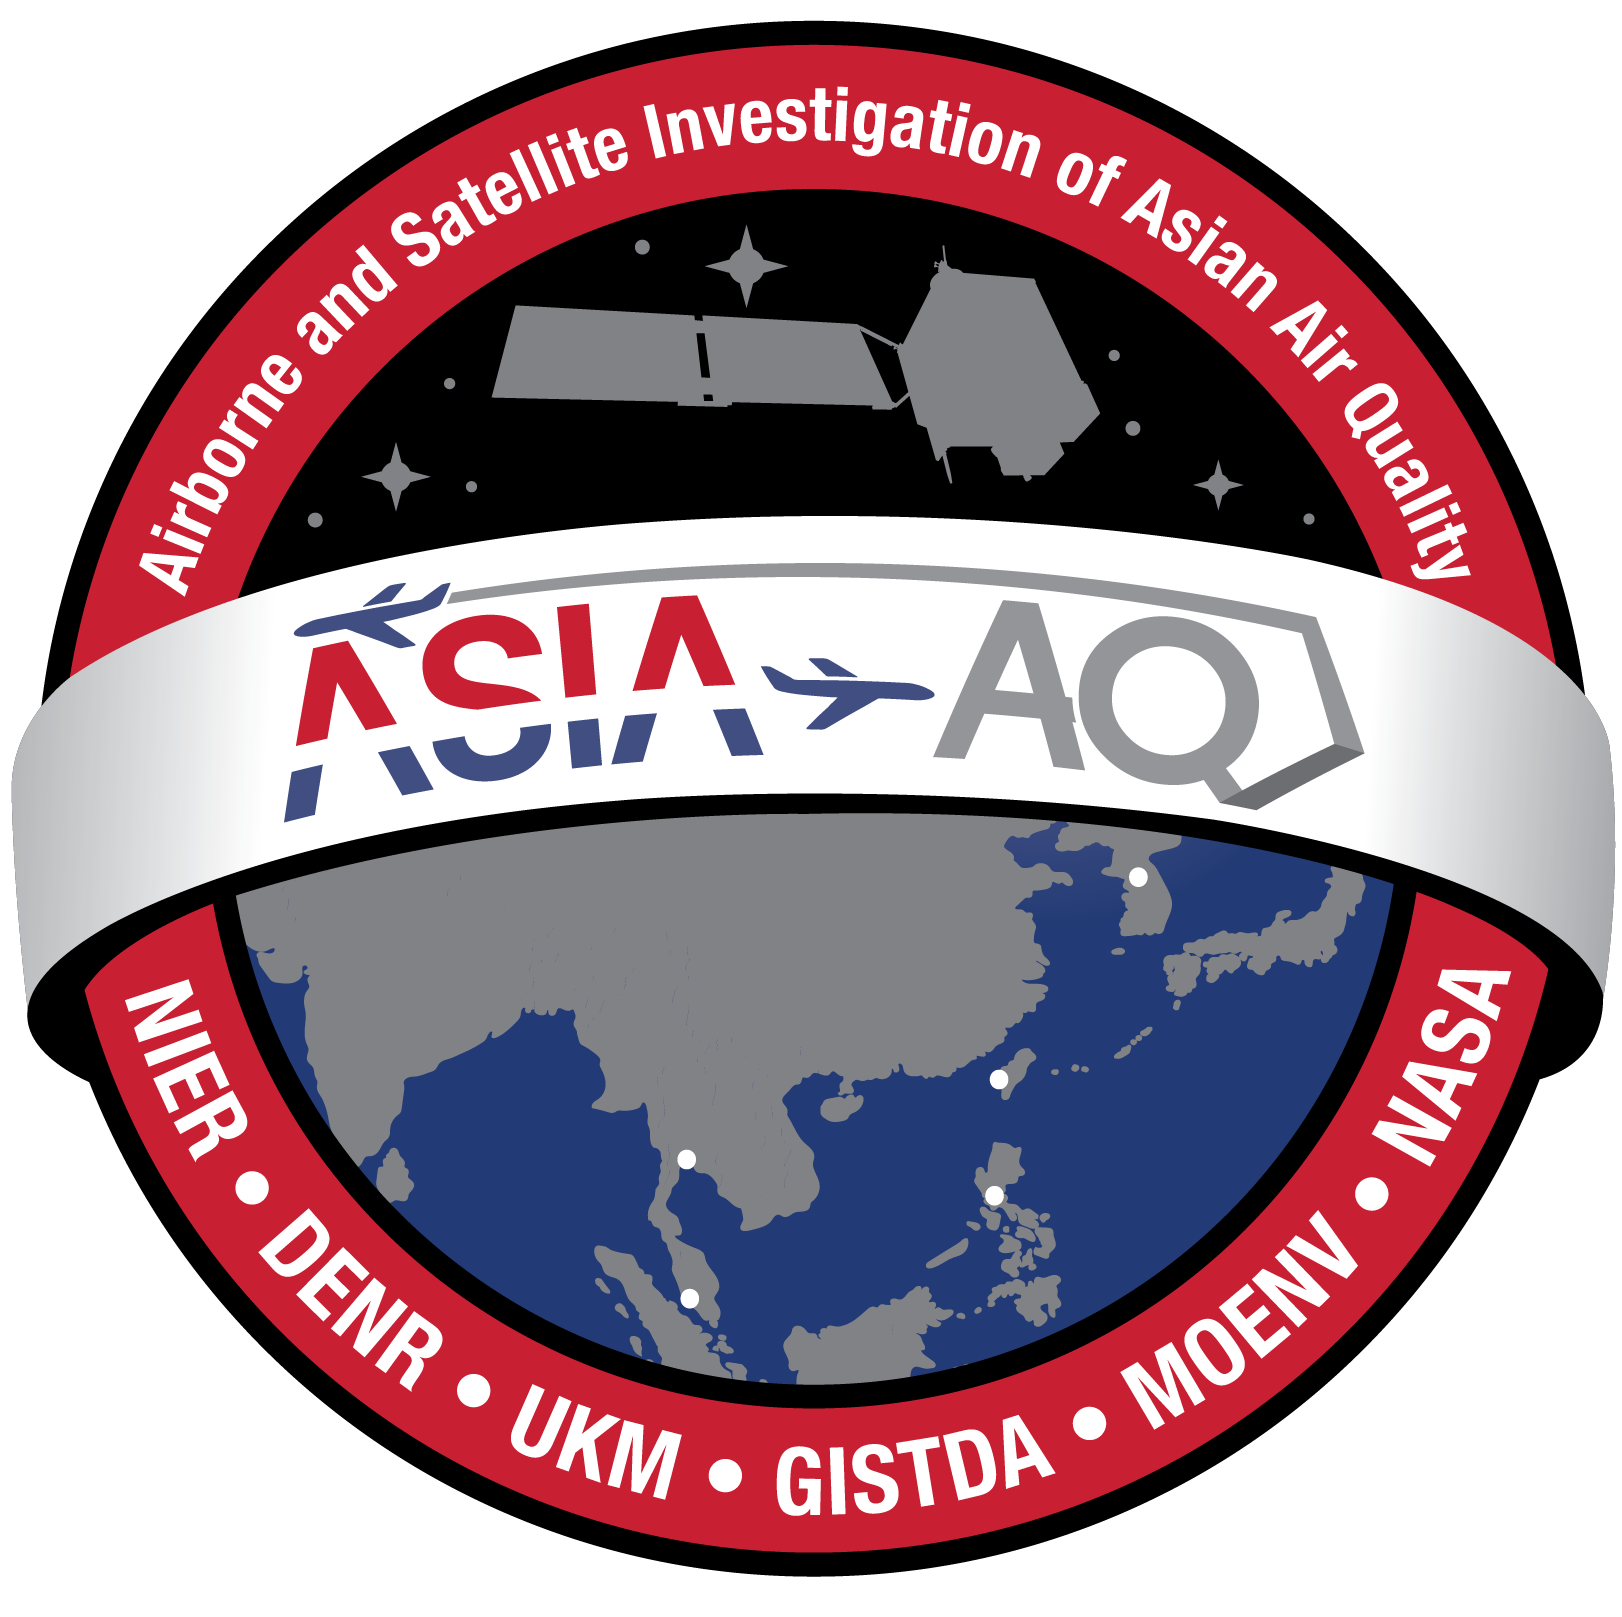 ASIA-AQ Mission